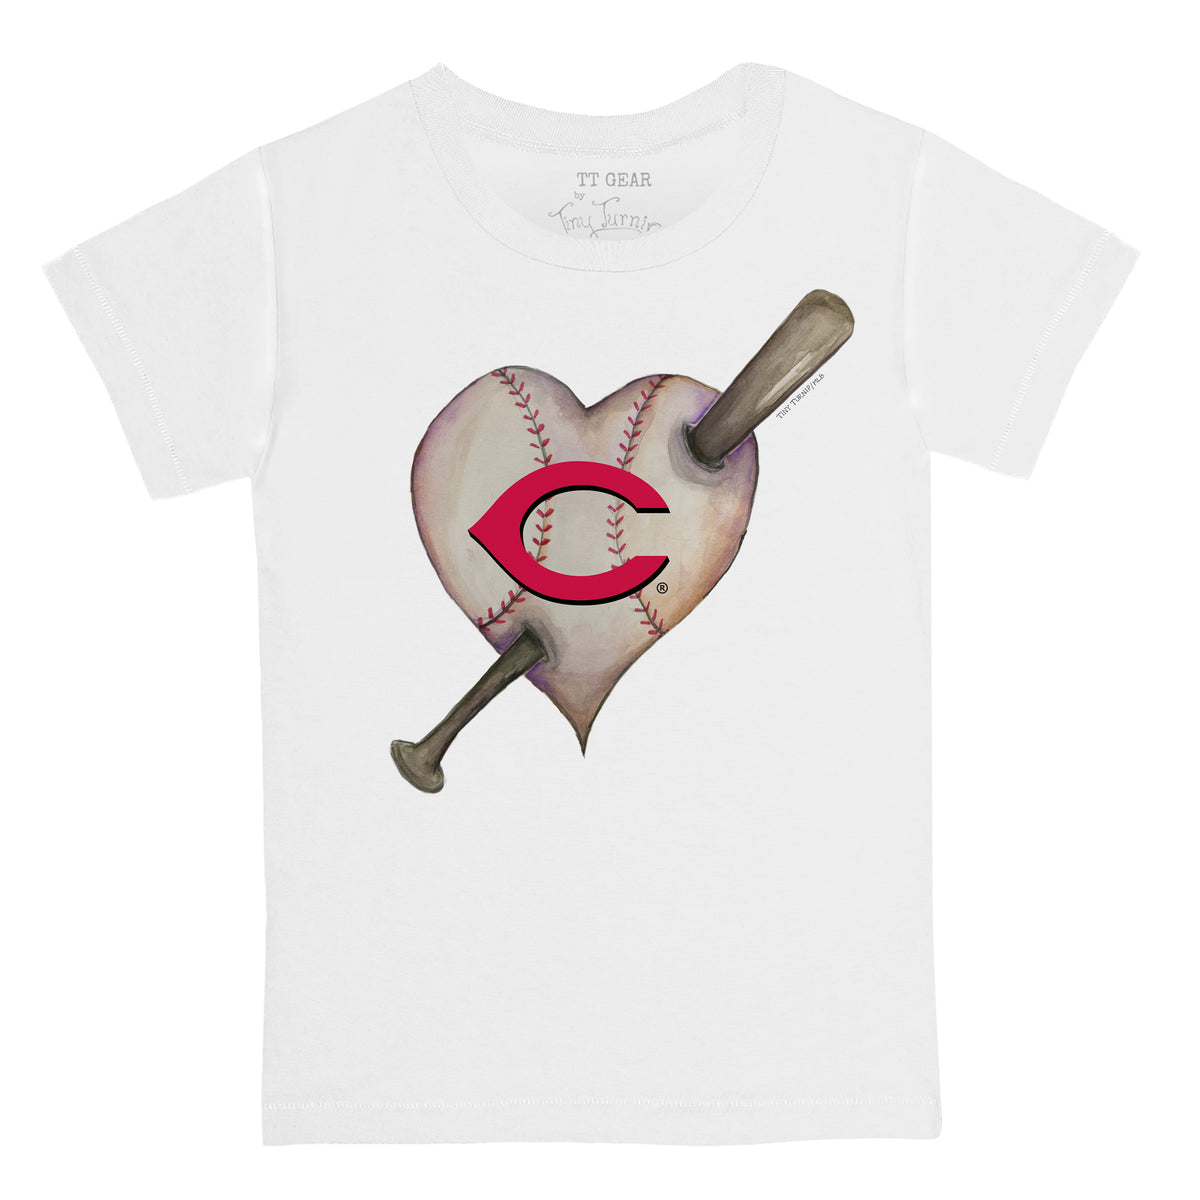 Cincinnati Reds Heart Bat Tee Shirt